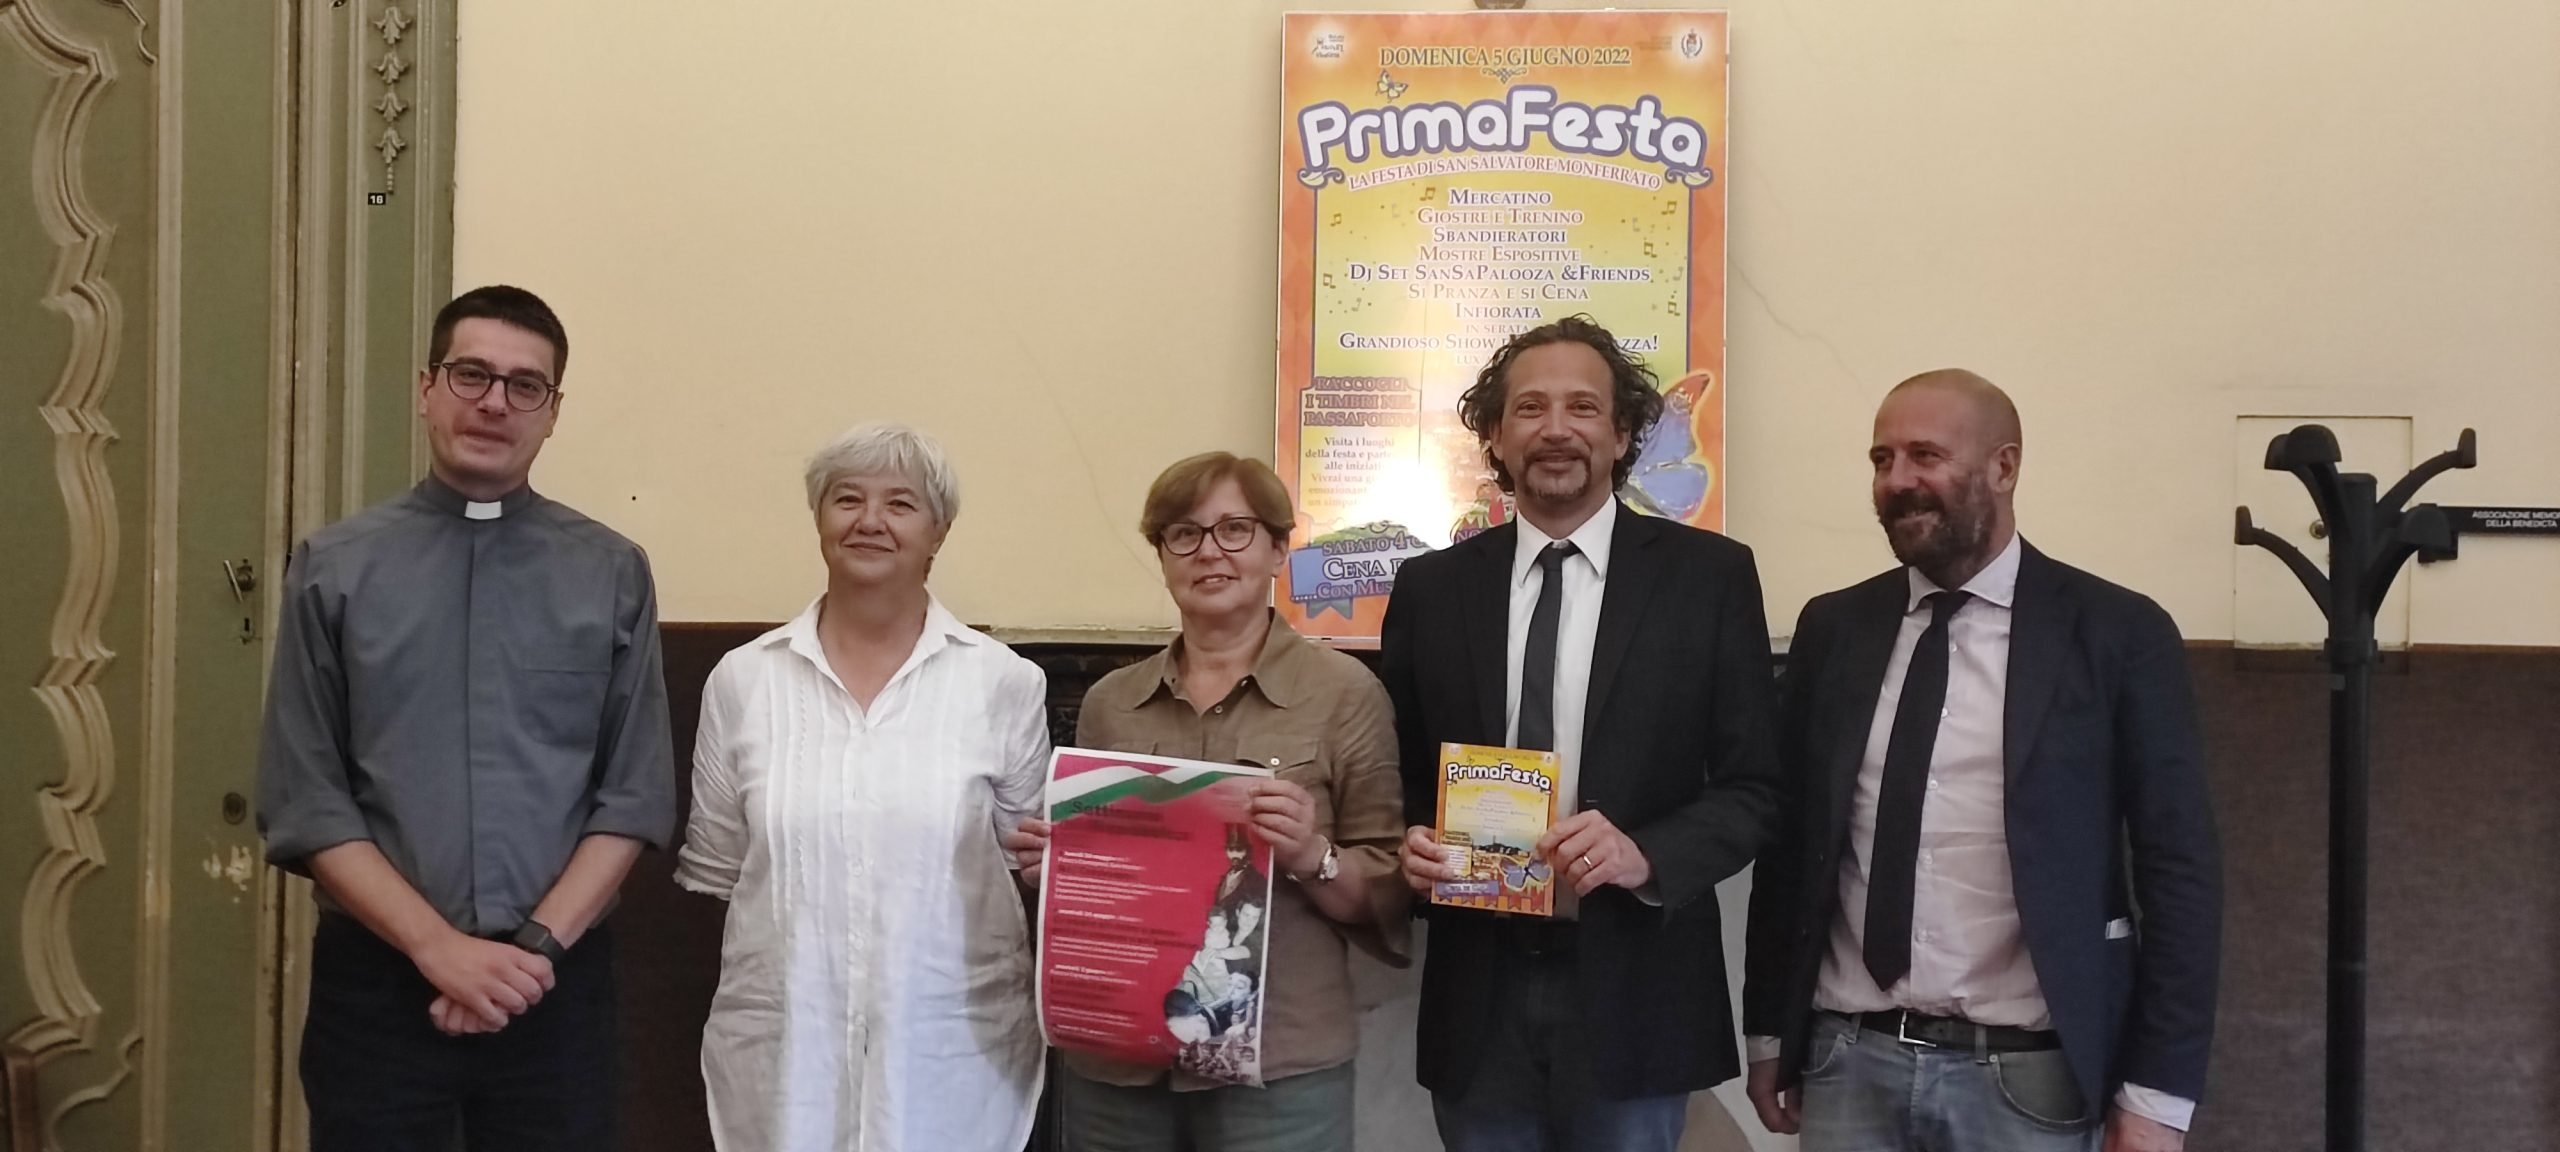 Sabato 4 e domenica 5 giugno torna “PrimaFesta”, la festa di San Salvatore Monferrato